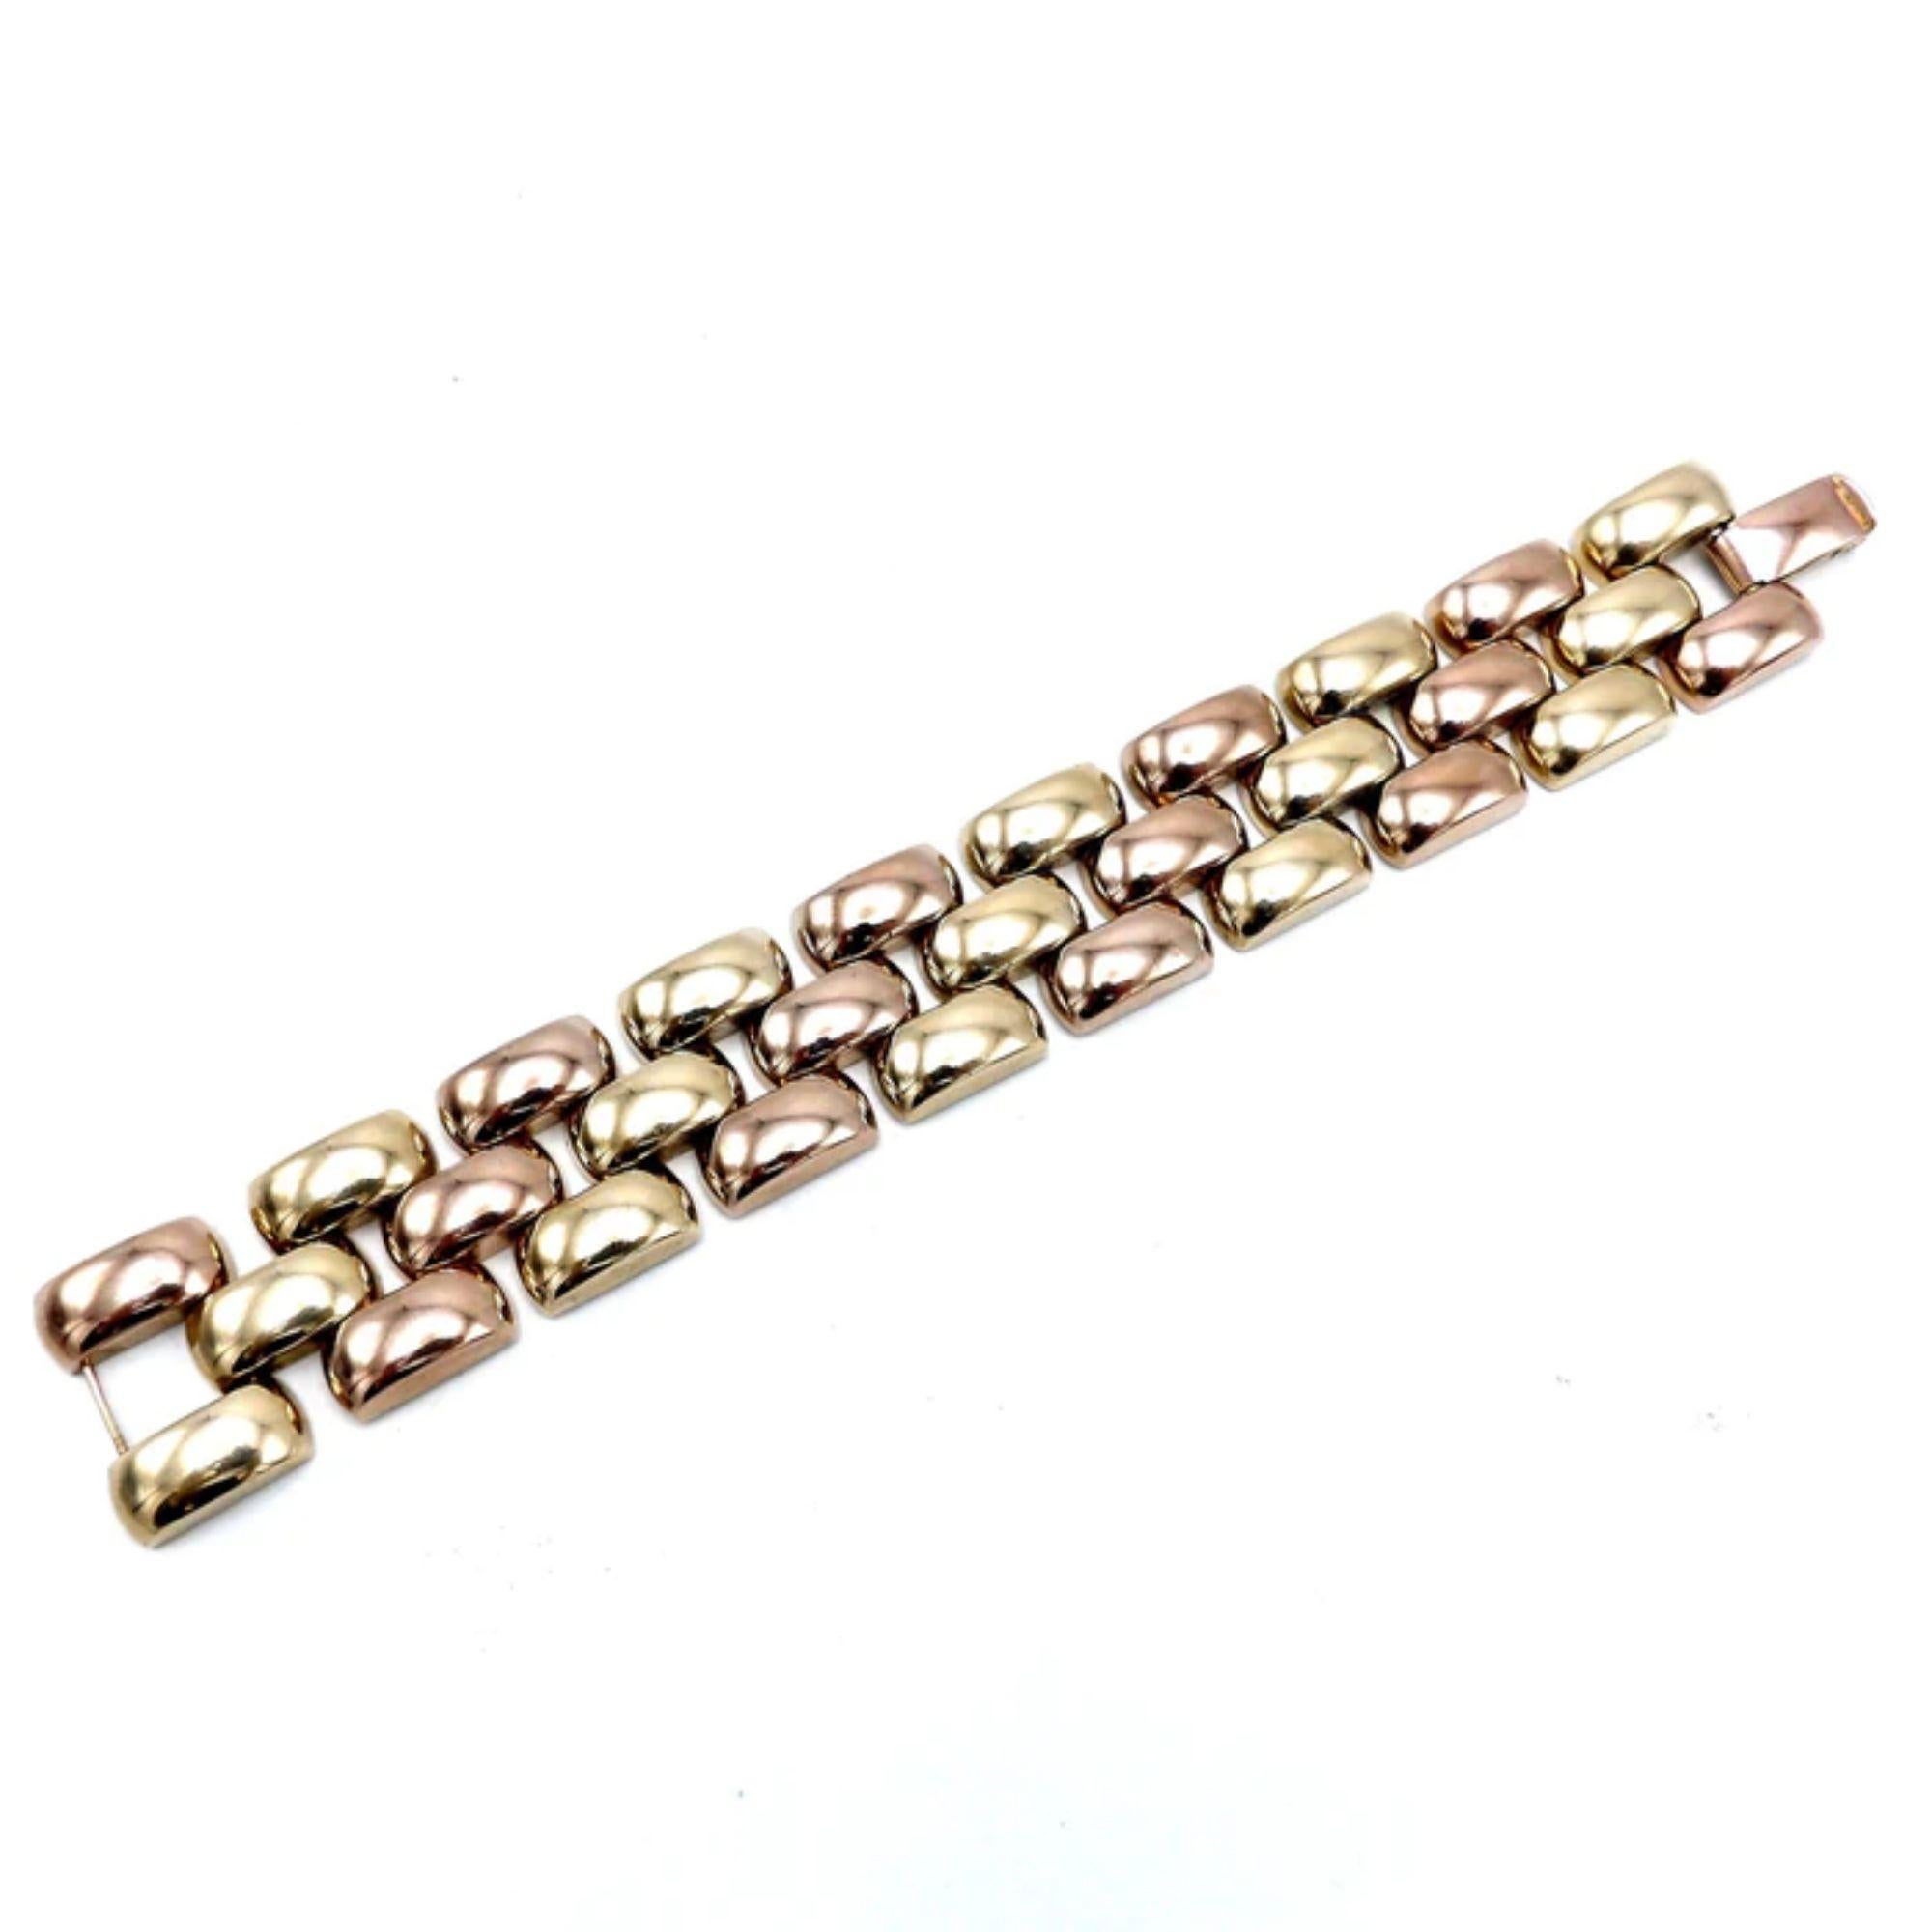 Ce bracelet rétro en or rose et jaune 14K présente un design géométrique caractéristique des bijoux du milieu du XXe siècle. La conception de bijoux rétro a été influencée par la culture et l'esthétique de la Seconde Guerre mondiale. Cette pièce a